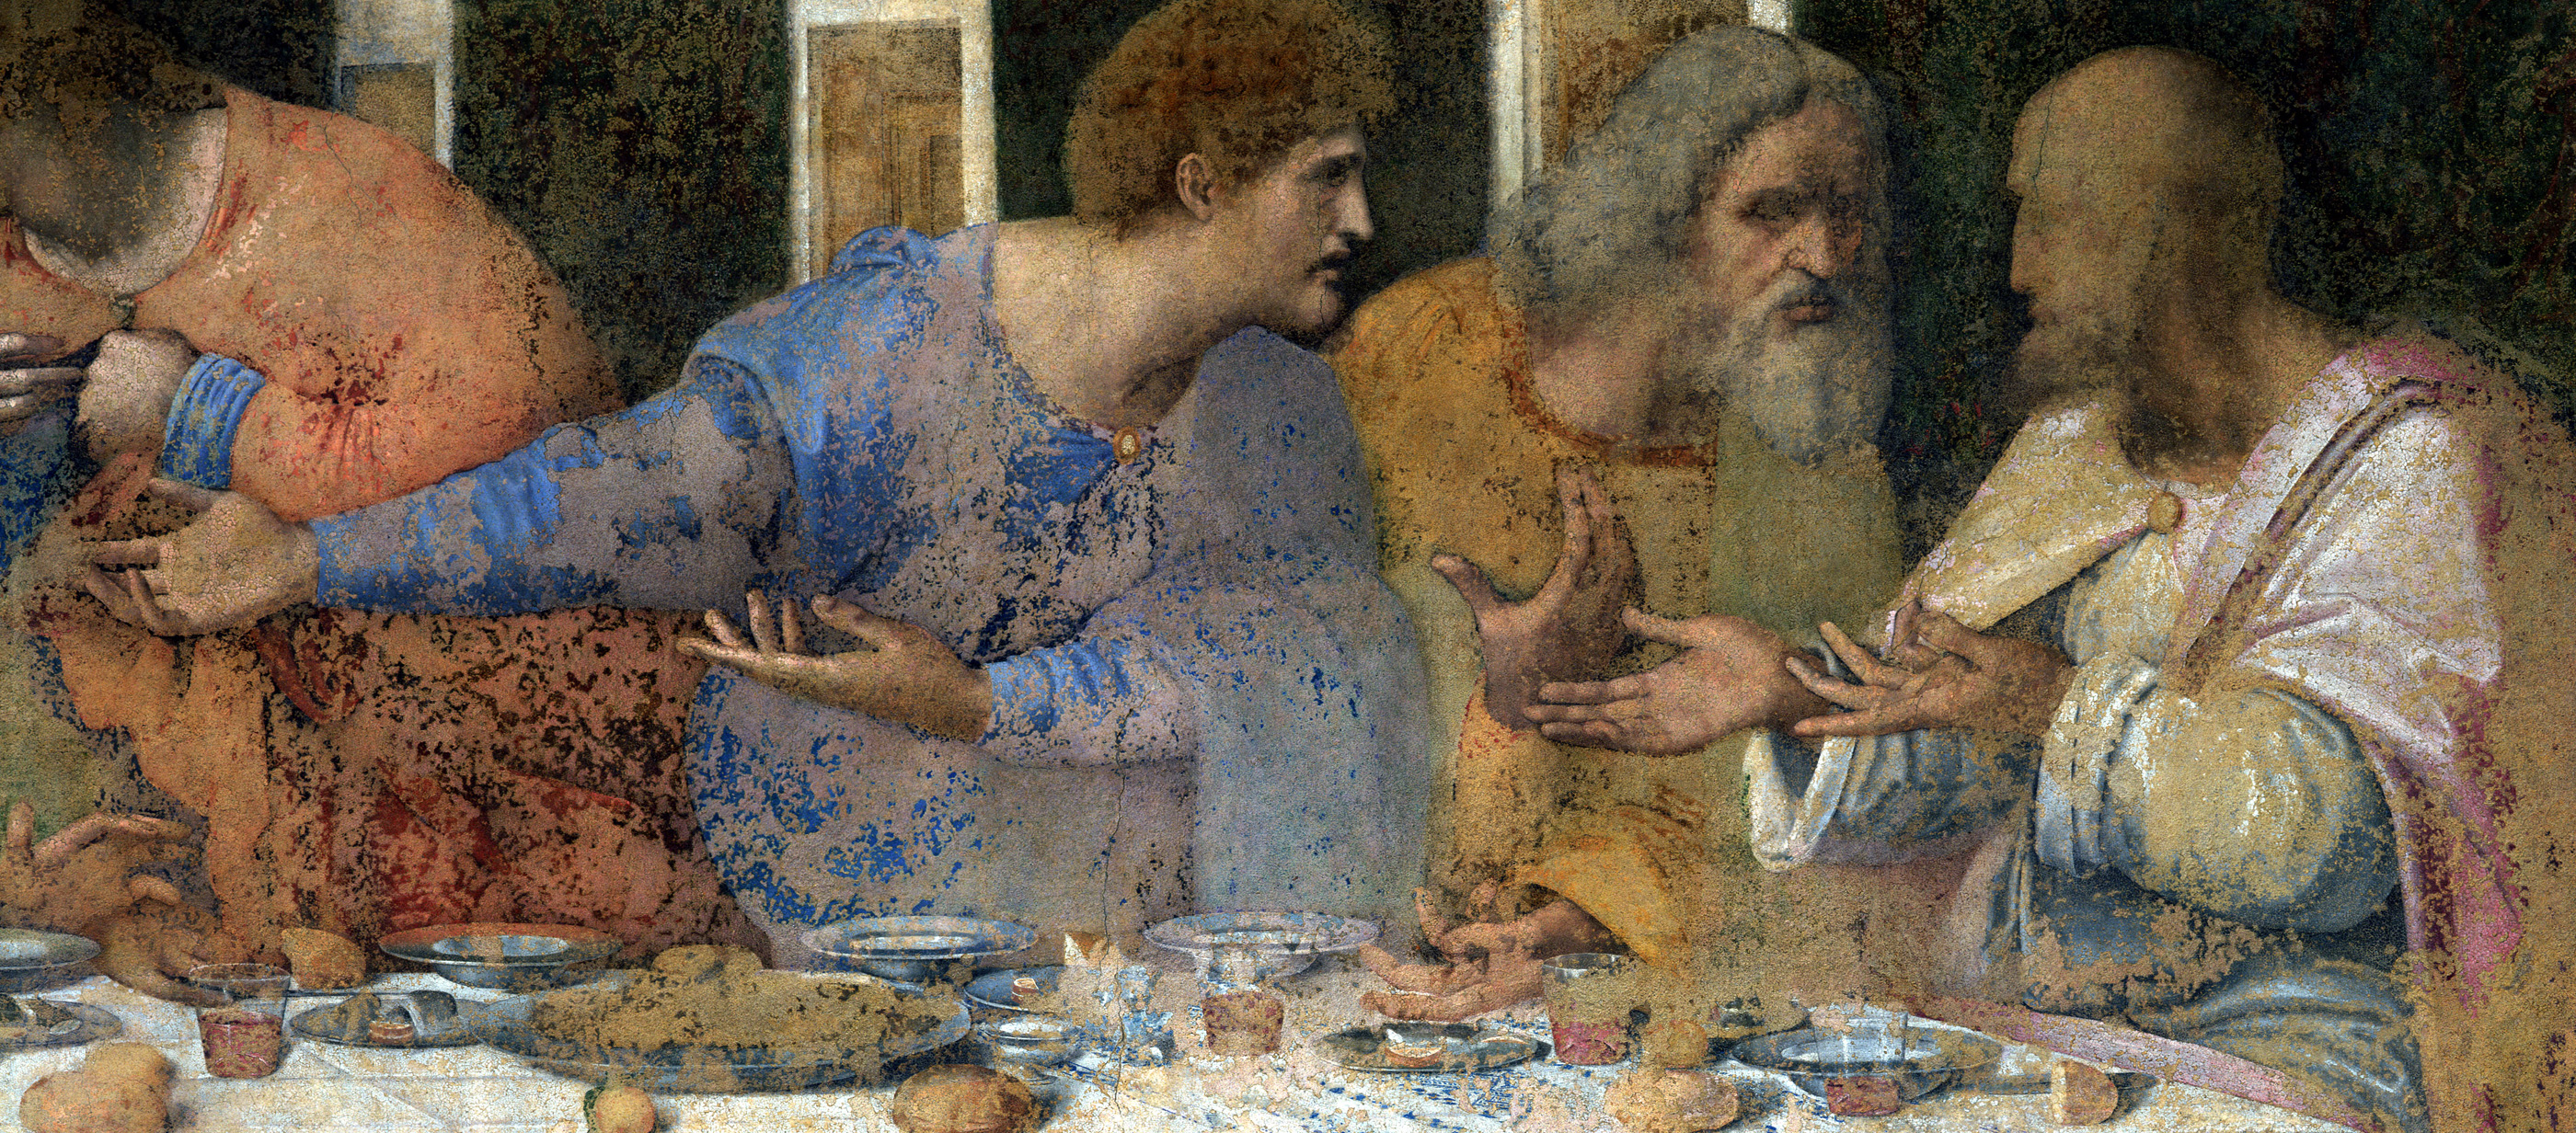 The Last Supper (detail), fresco by Leonardo da Vinci, c. 1497. Santa Maria delle Grazie, Milan, Italy. 